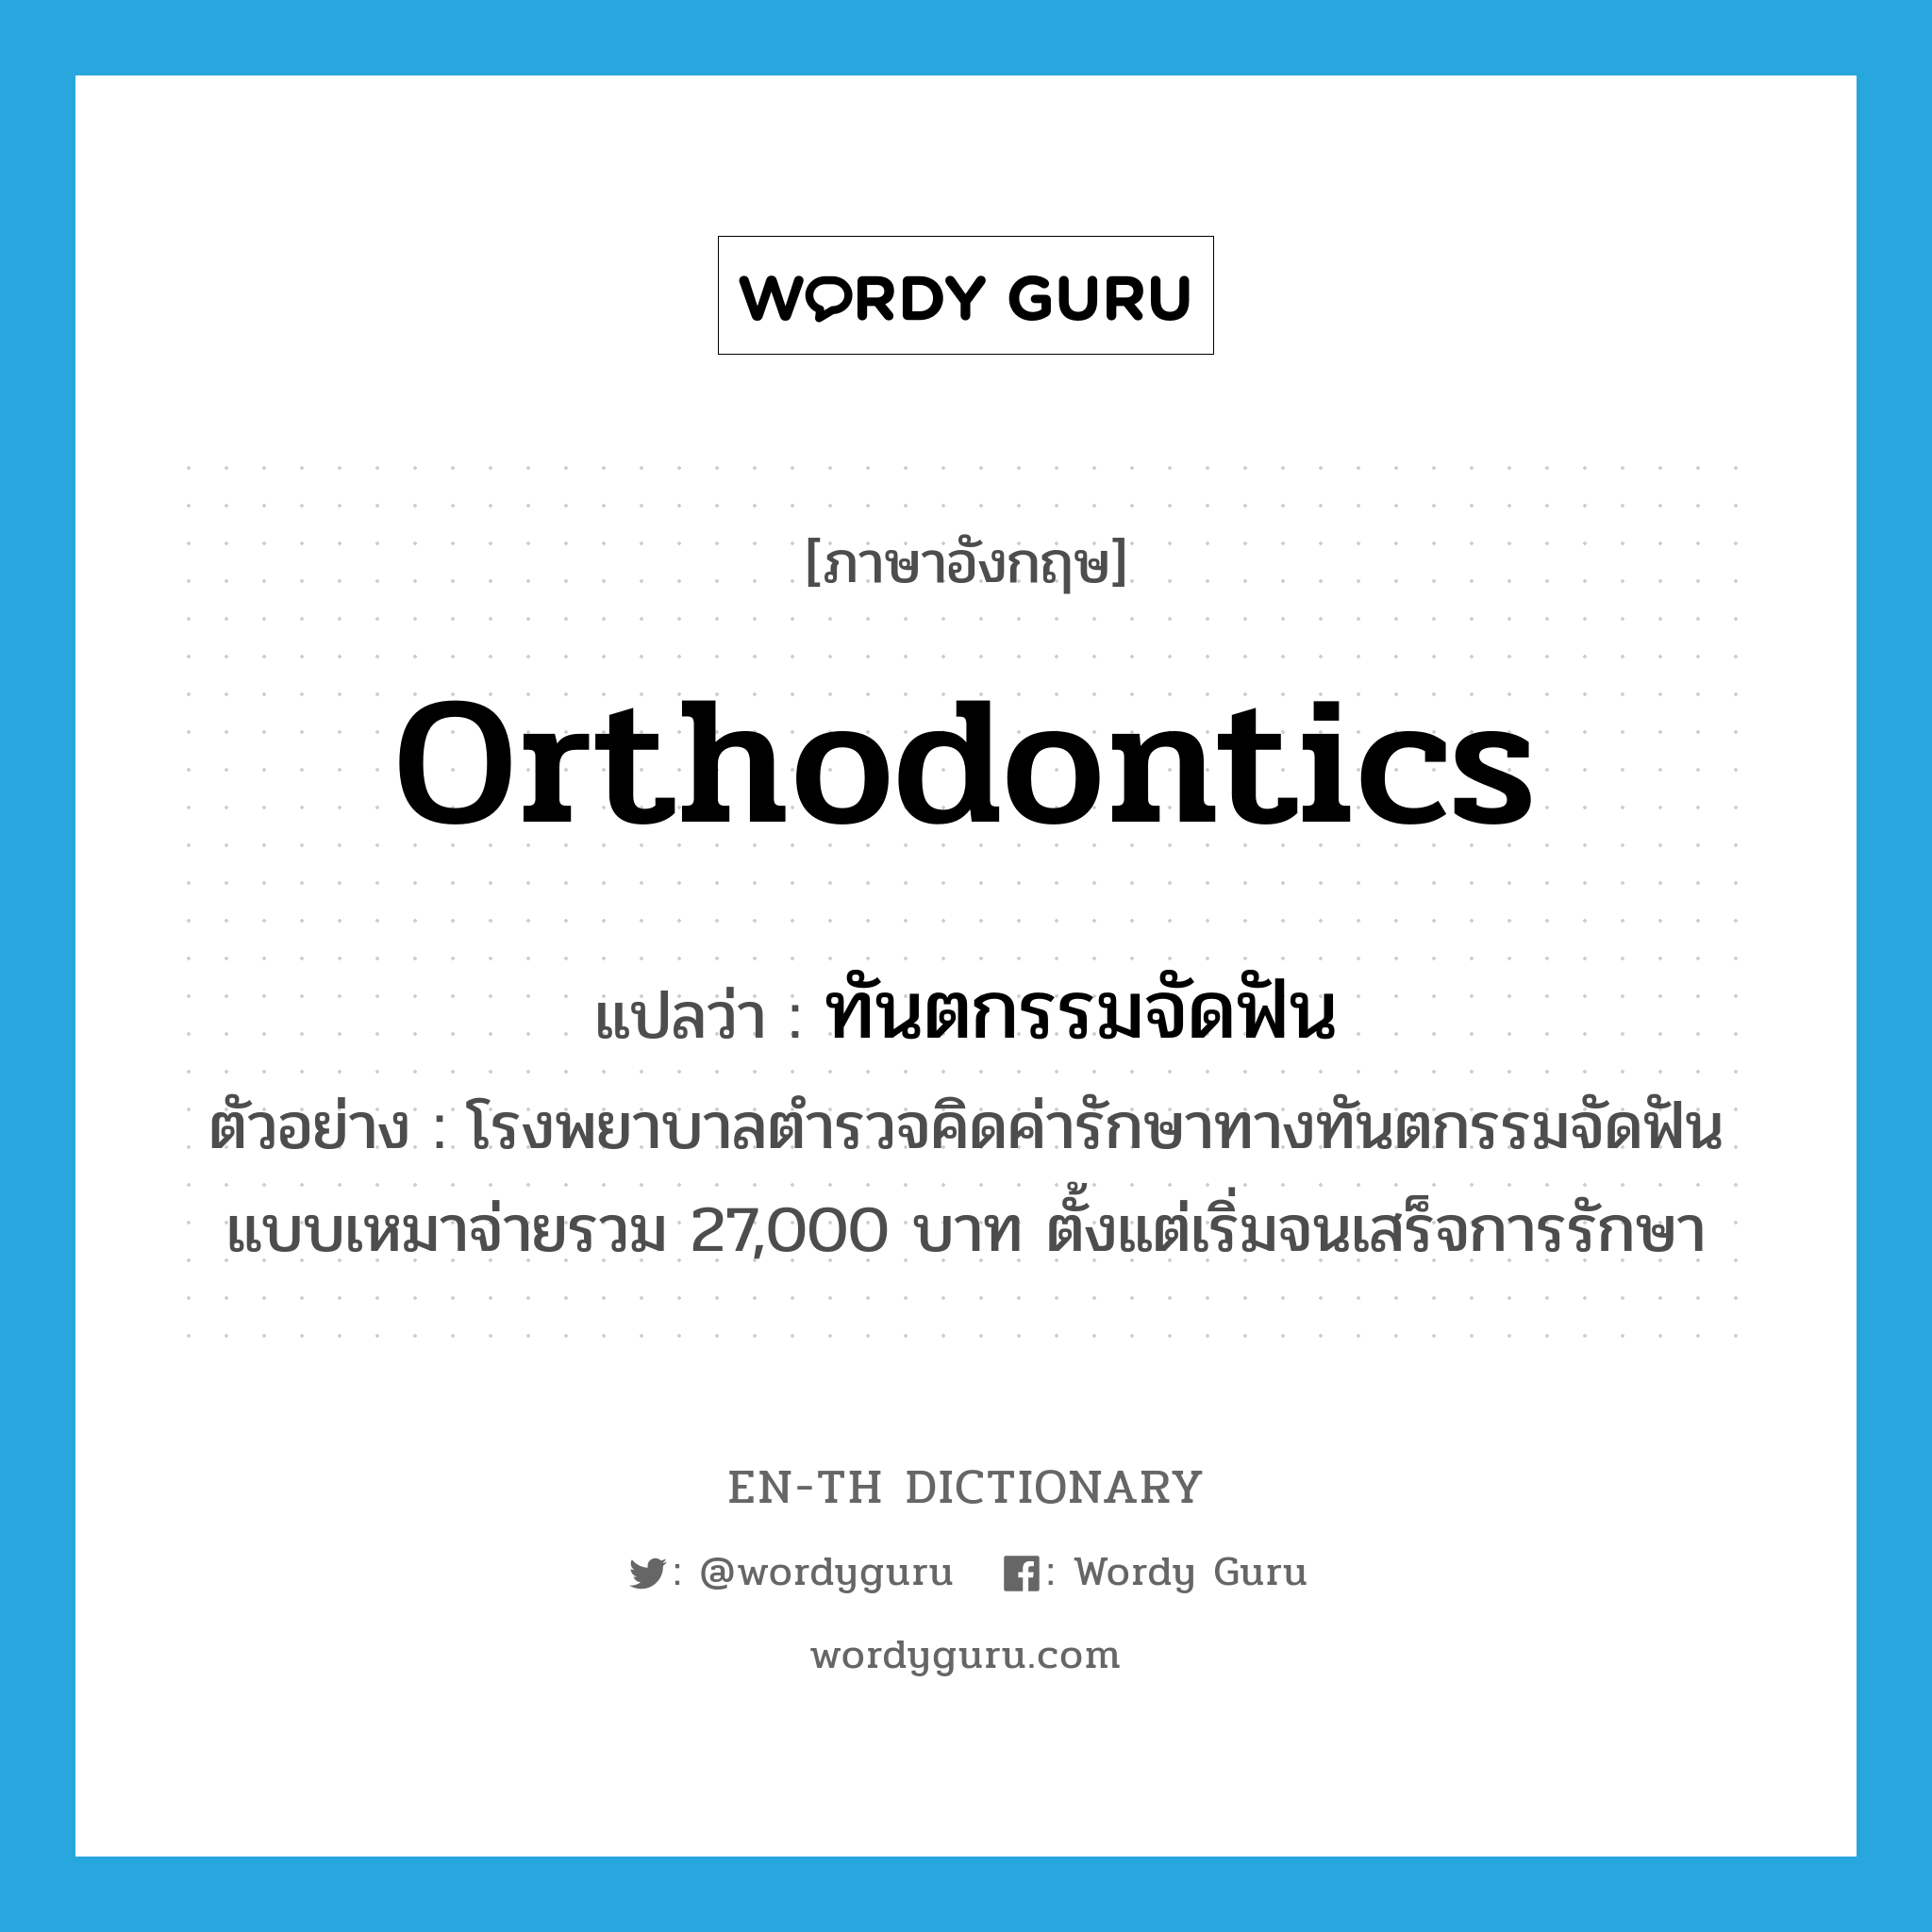 orthodontics แปลว่า?, คำศัพท์ภาษาอังกฤษ orthodontics แปลว่า ทันตกรรมจัดฟัน ประเภท N ตัวอย่าง โรงพยาบาลตำรวจคิดค่ารักษาทางทันตกรรมจัดฟันแบบเหมาจ่ายรวม 27,000 บาท ตั้งแต่เริ่มจนเสร็จการรักษา หมวด N